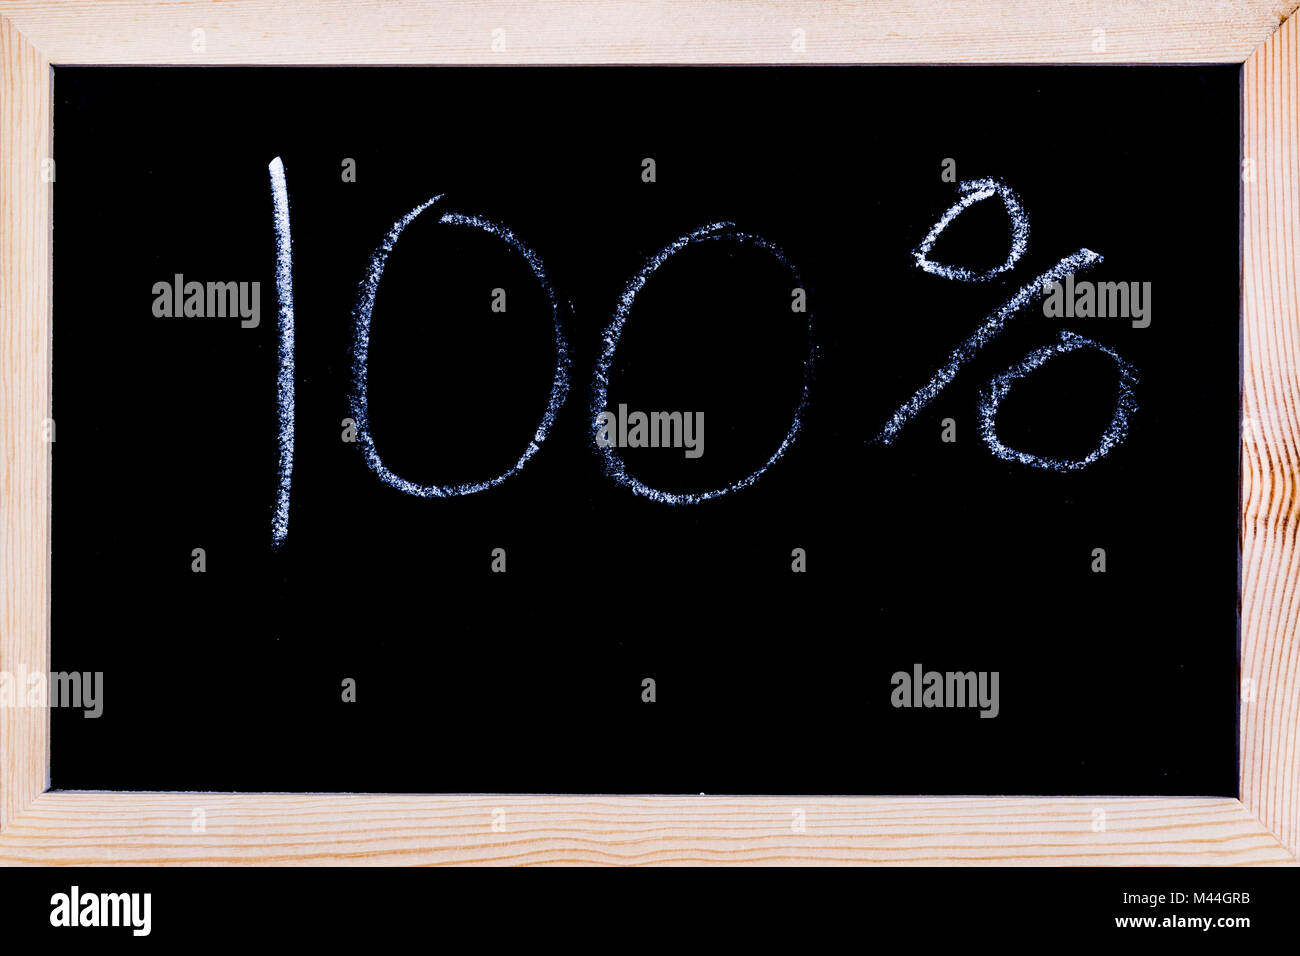 Blackboard with 100% written on it Stock Photo